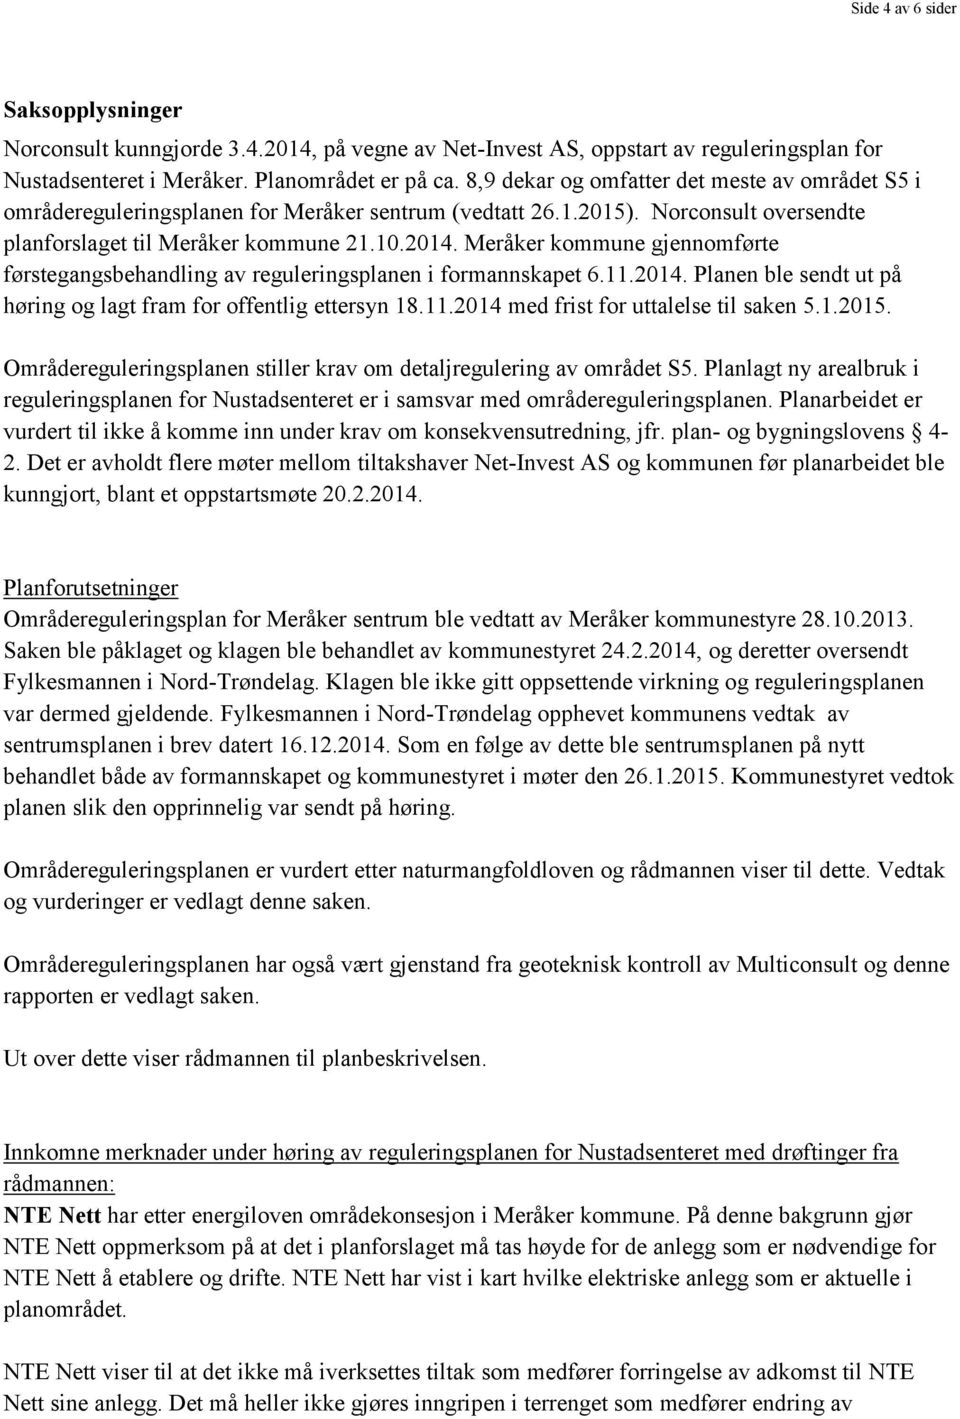 Meråker kommune gjennomførte førstegangsbehandling av reguleringsplanen i formannskapet 6.11.2014. Planen ble sendt ut på høring og lagt fram for offentlig ettersyn 18.11.2014 med frist for uttalelse til saken 5.